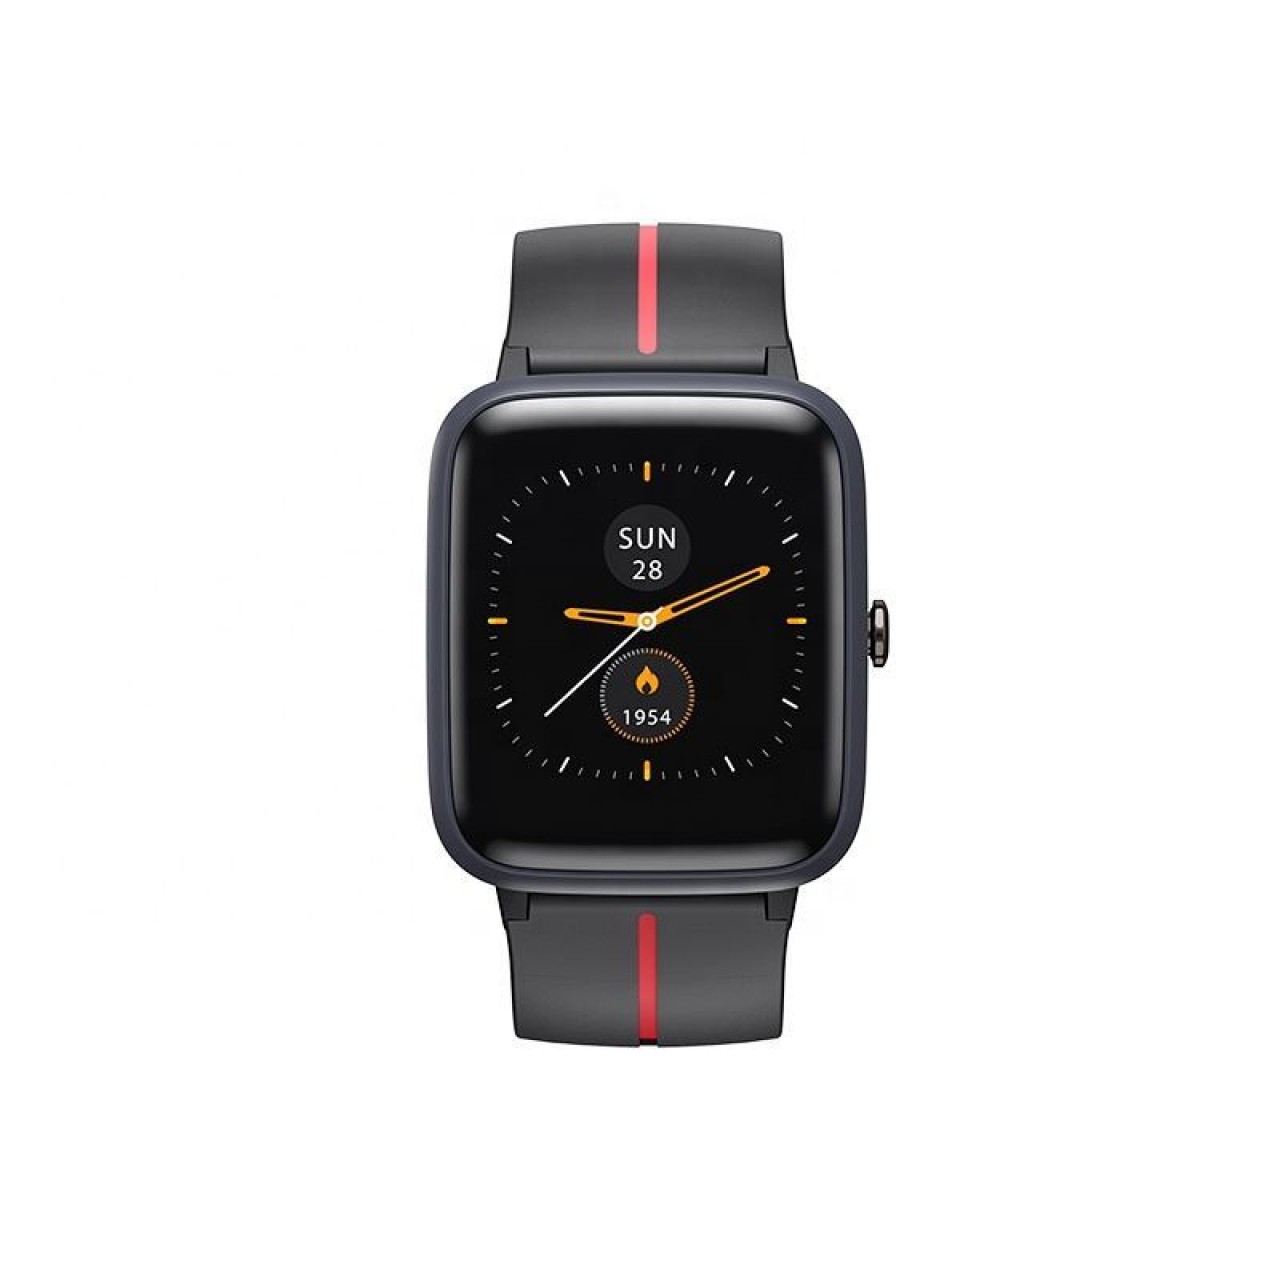 Ρολόι Smart - Havit M9002G - 5952 - Μαύρο 